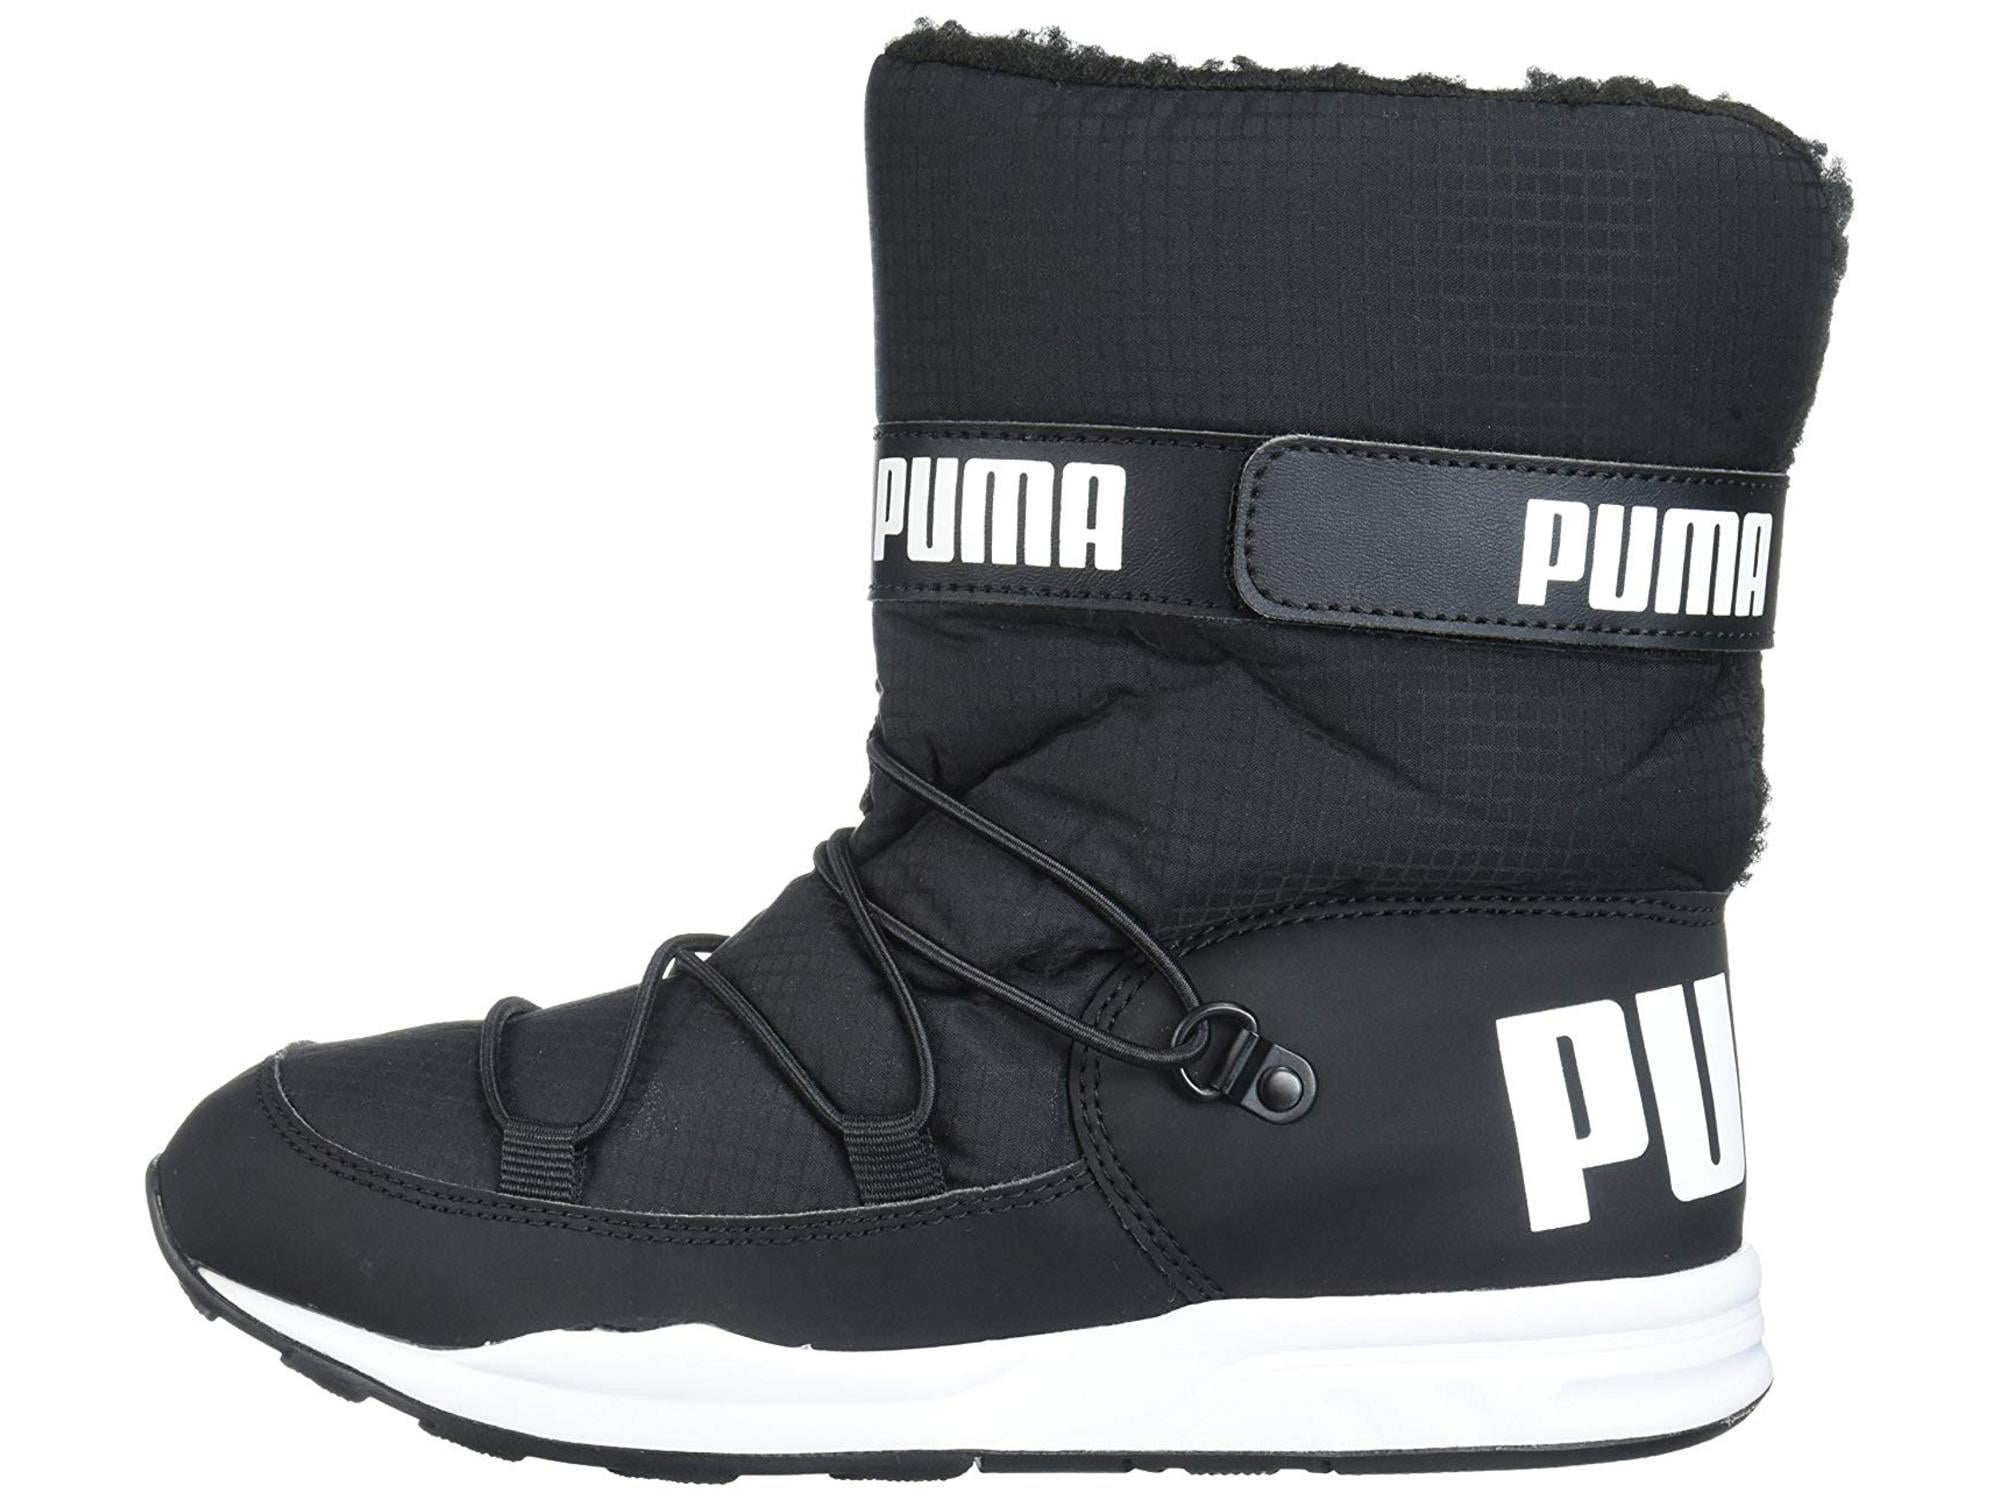 puma ankle length shoes